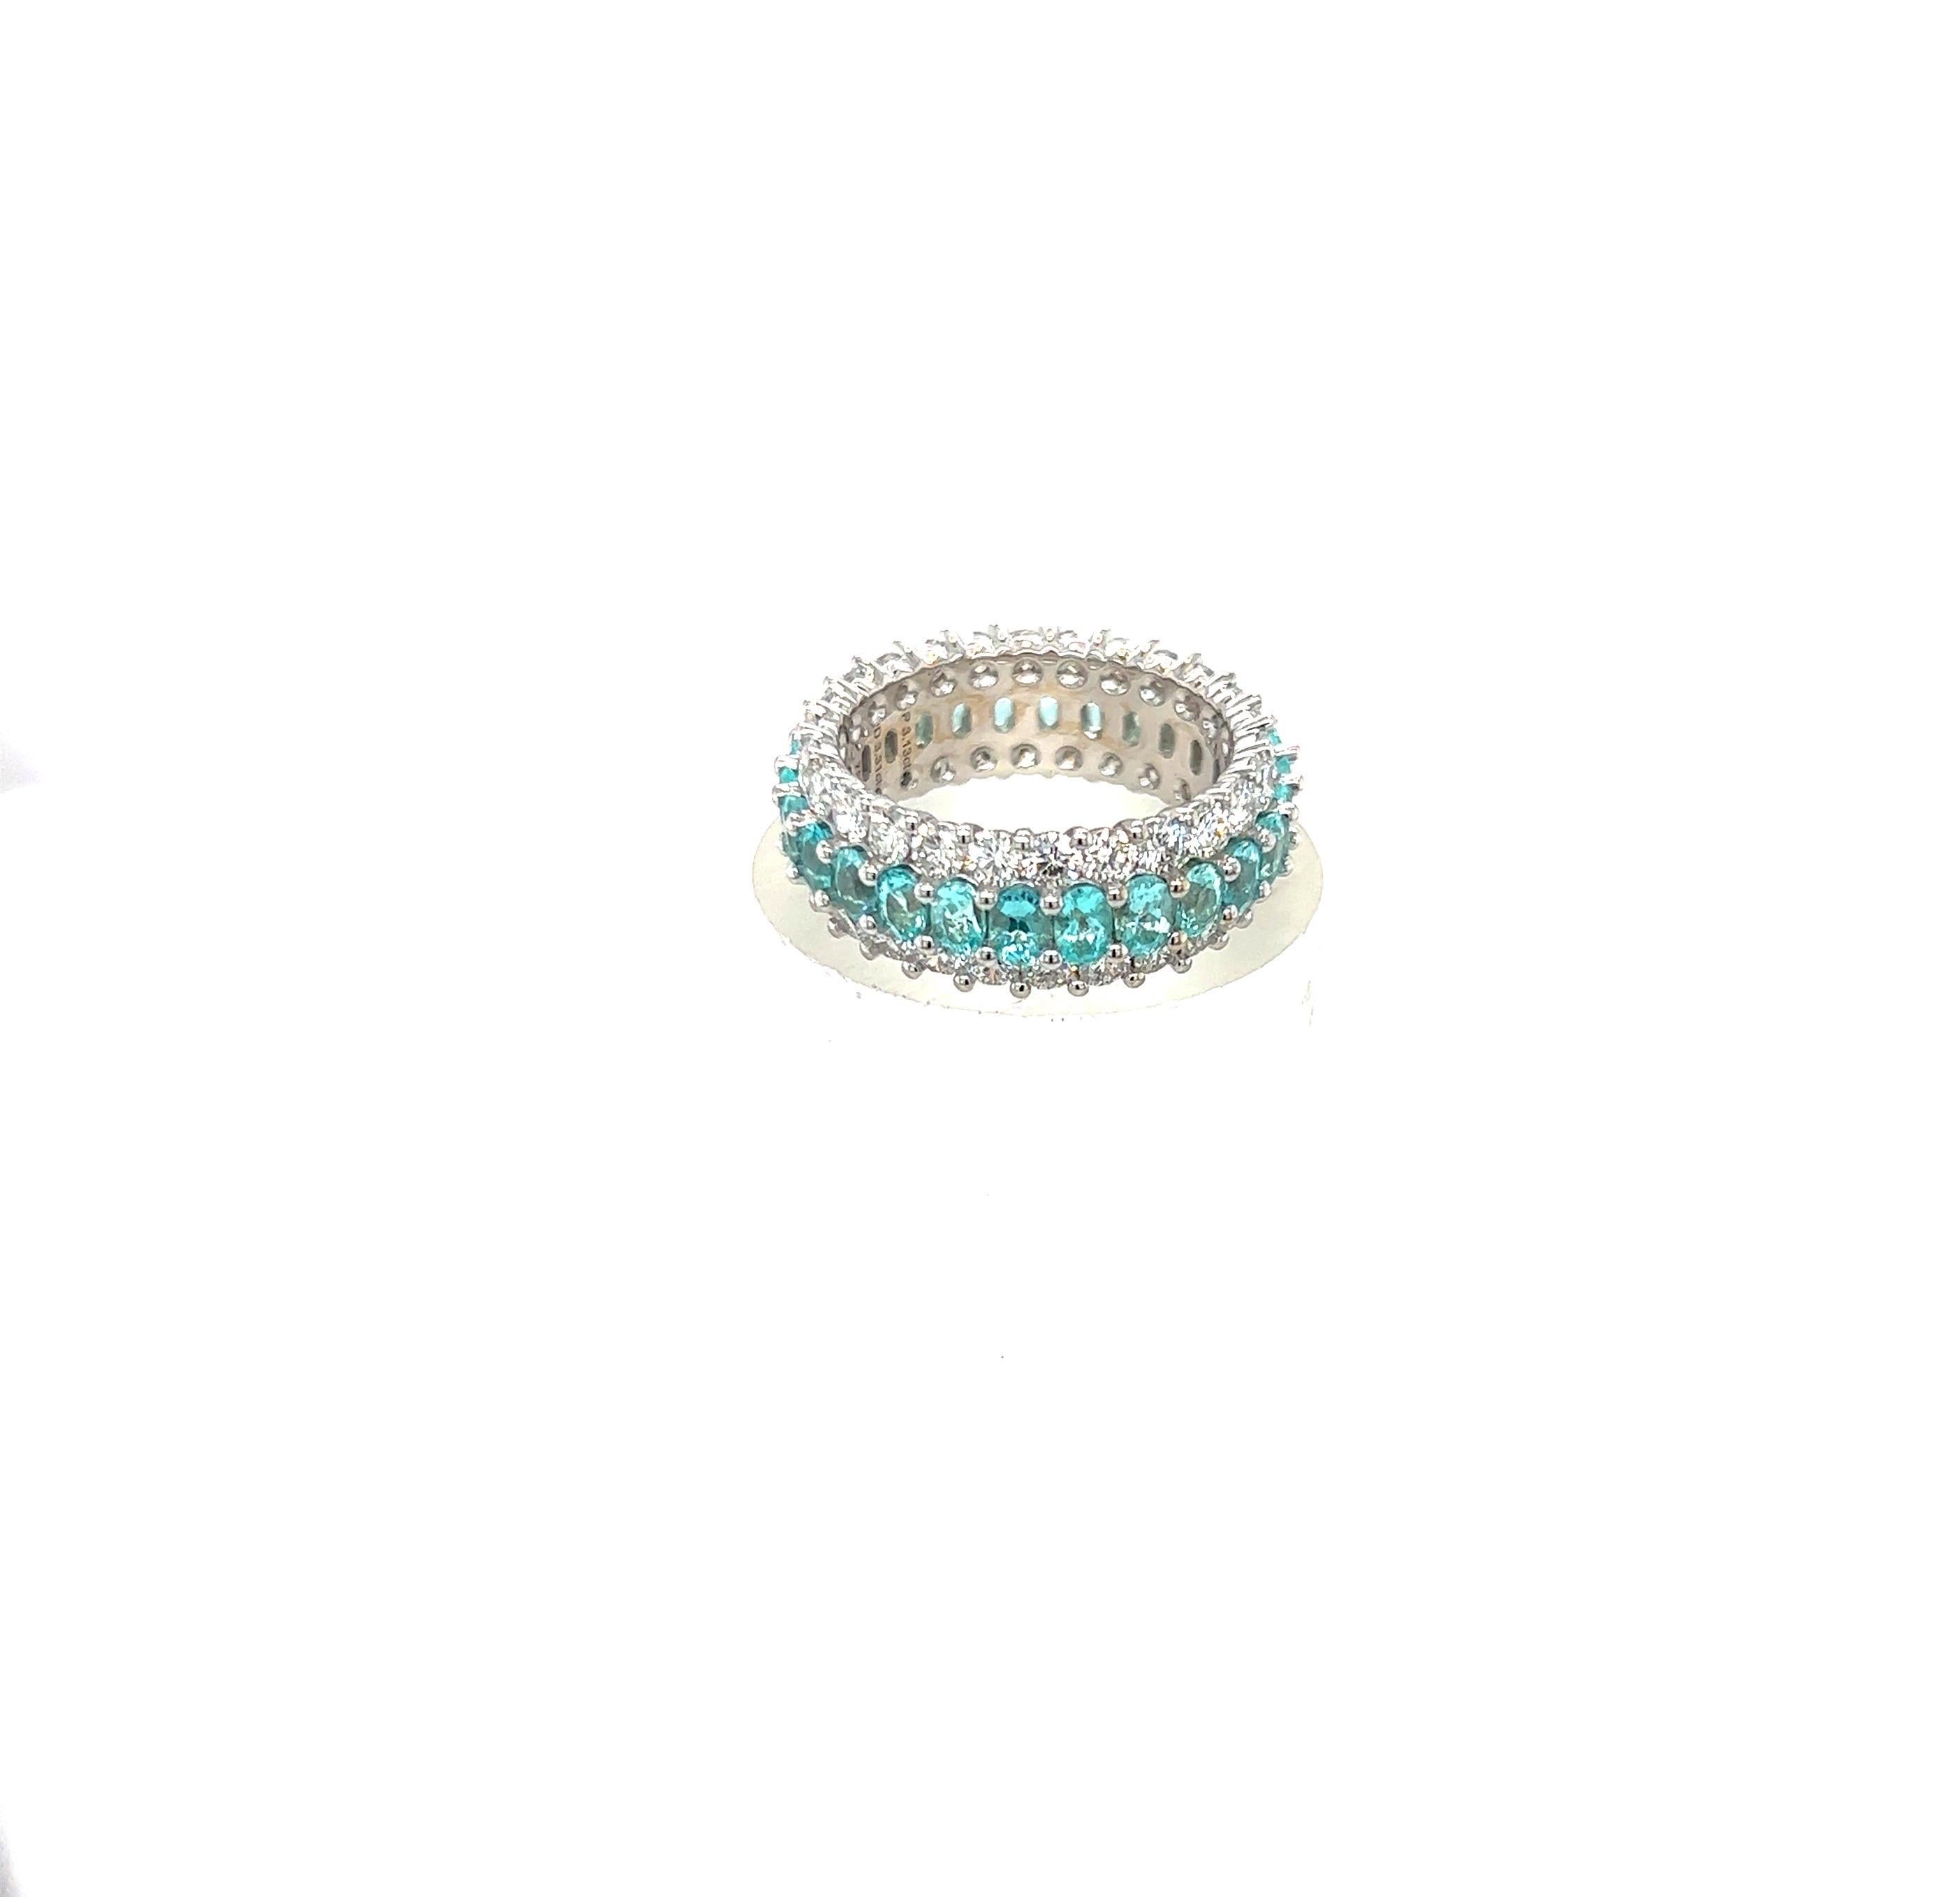 Magnifique bracelet en or blanc 18 carats serti de  une rangée centrale de 26 tourmalines bleues ovales et  2 rangées de 52 diamants ronds et brillants.
Tourmalines bleues = 3,13 carats
Diamants = 3,31 carats
Bague taille 7.5